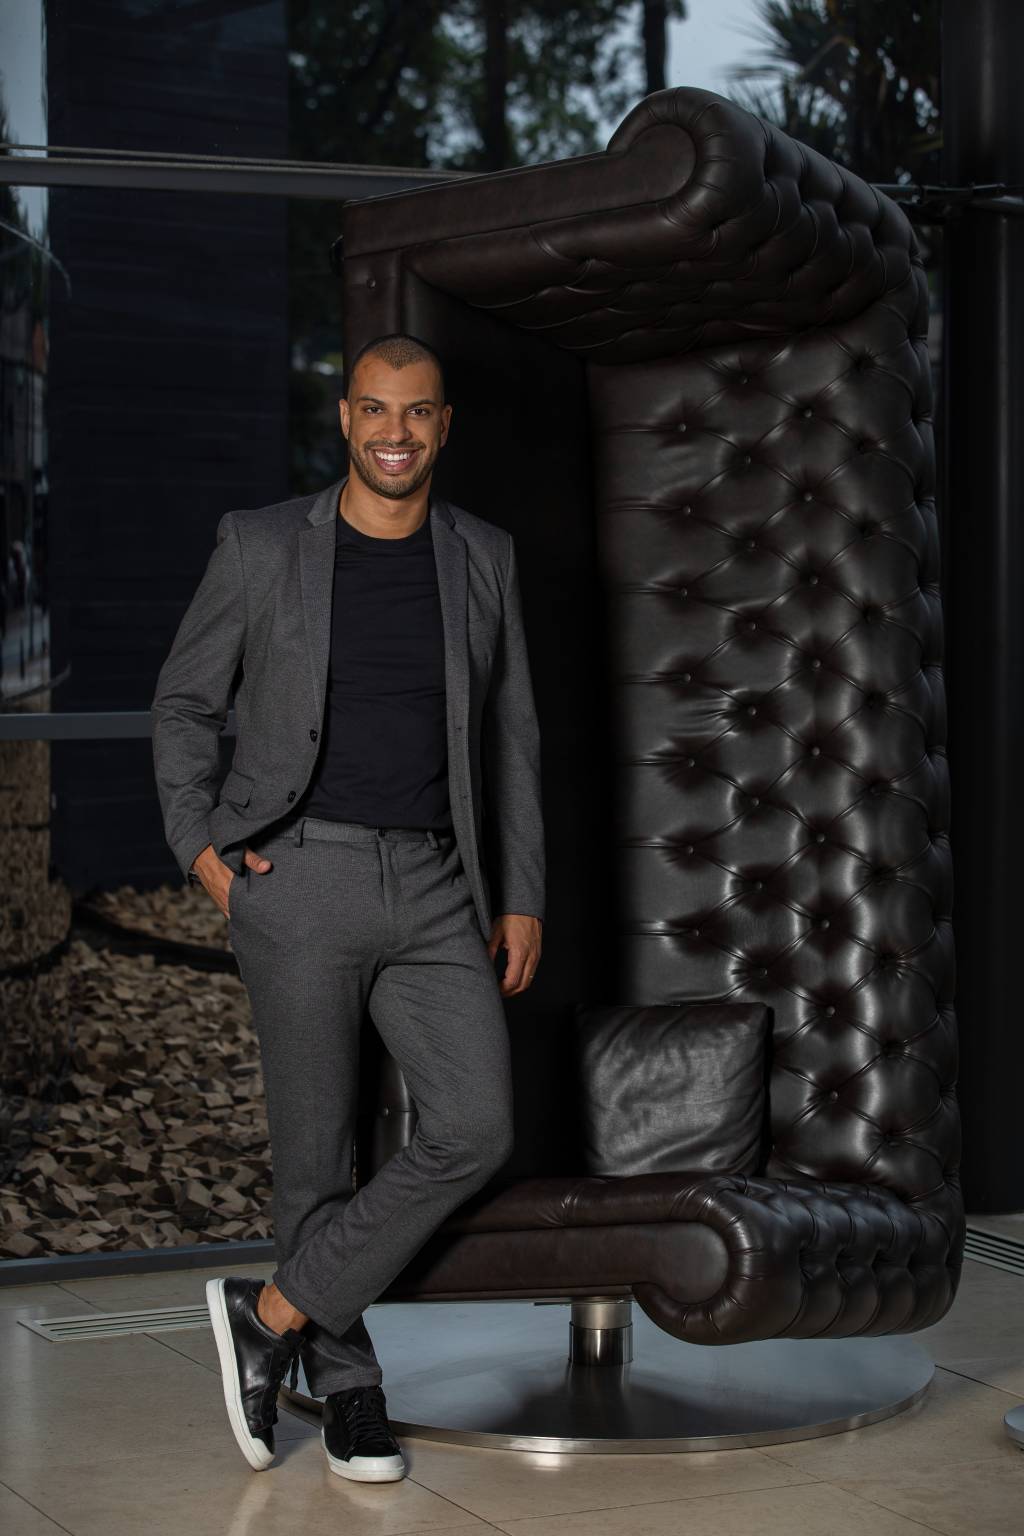 Wellington Melo, do Unique, posa de pé ao lado de sofá de couro preto erguido de pé como escultura. Veste terno cinza com camiseta preta.